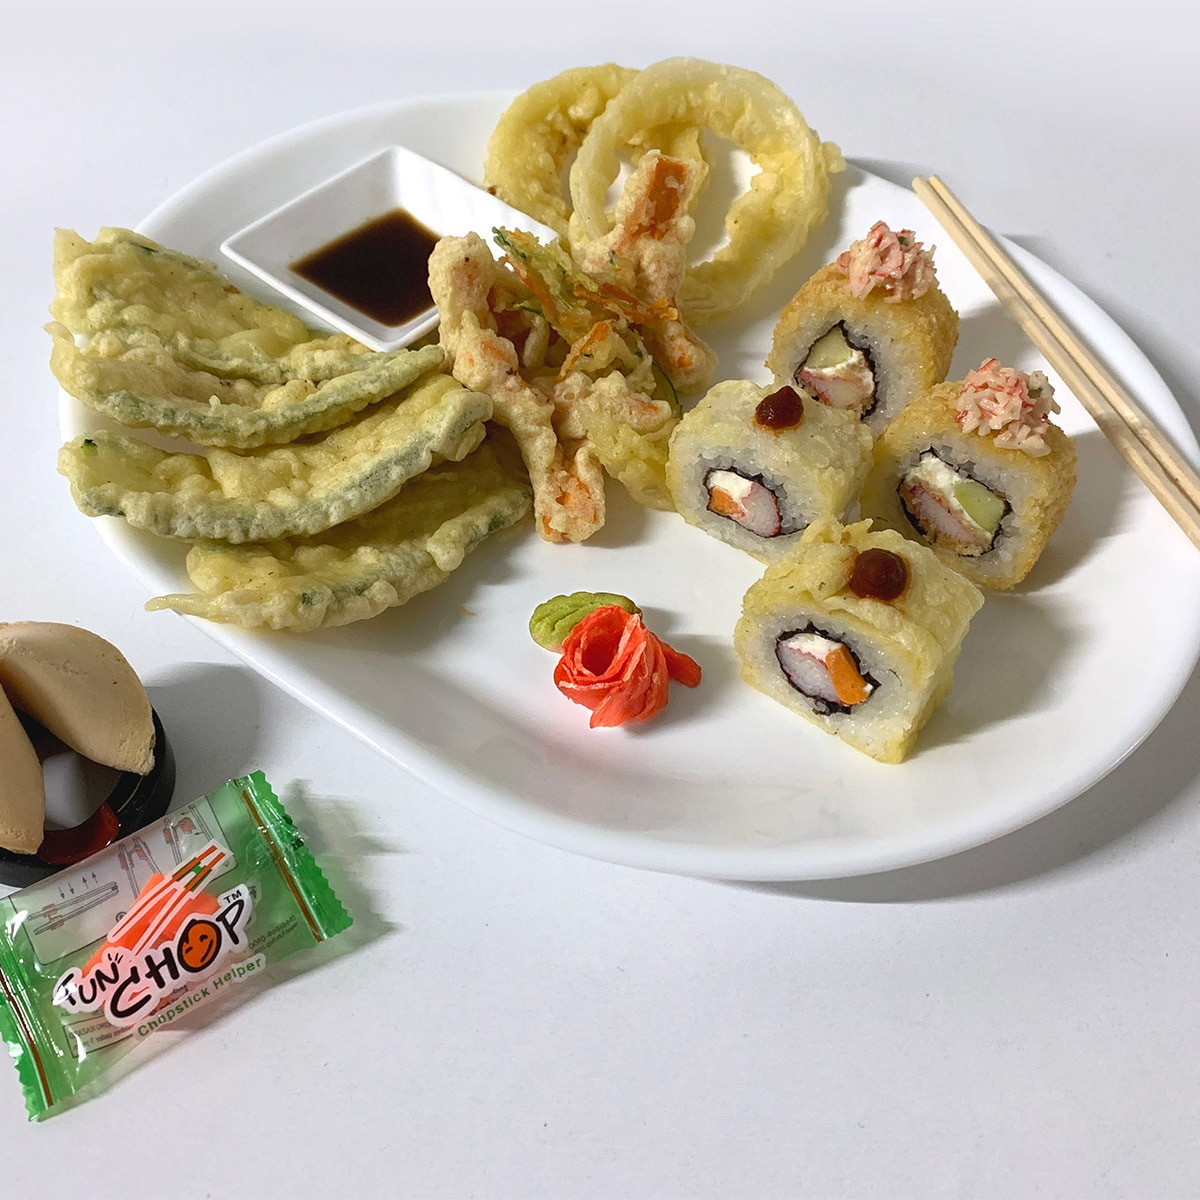 Satoru Kit para Preparar Sushi 2 cajas